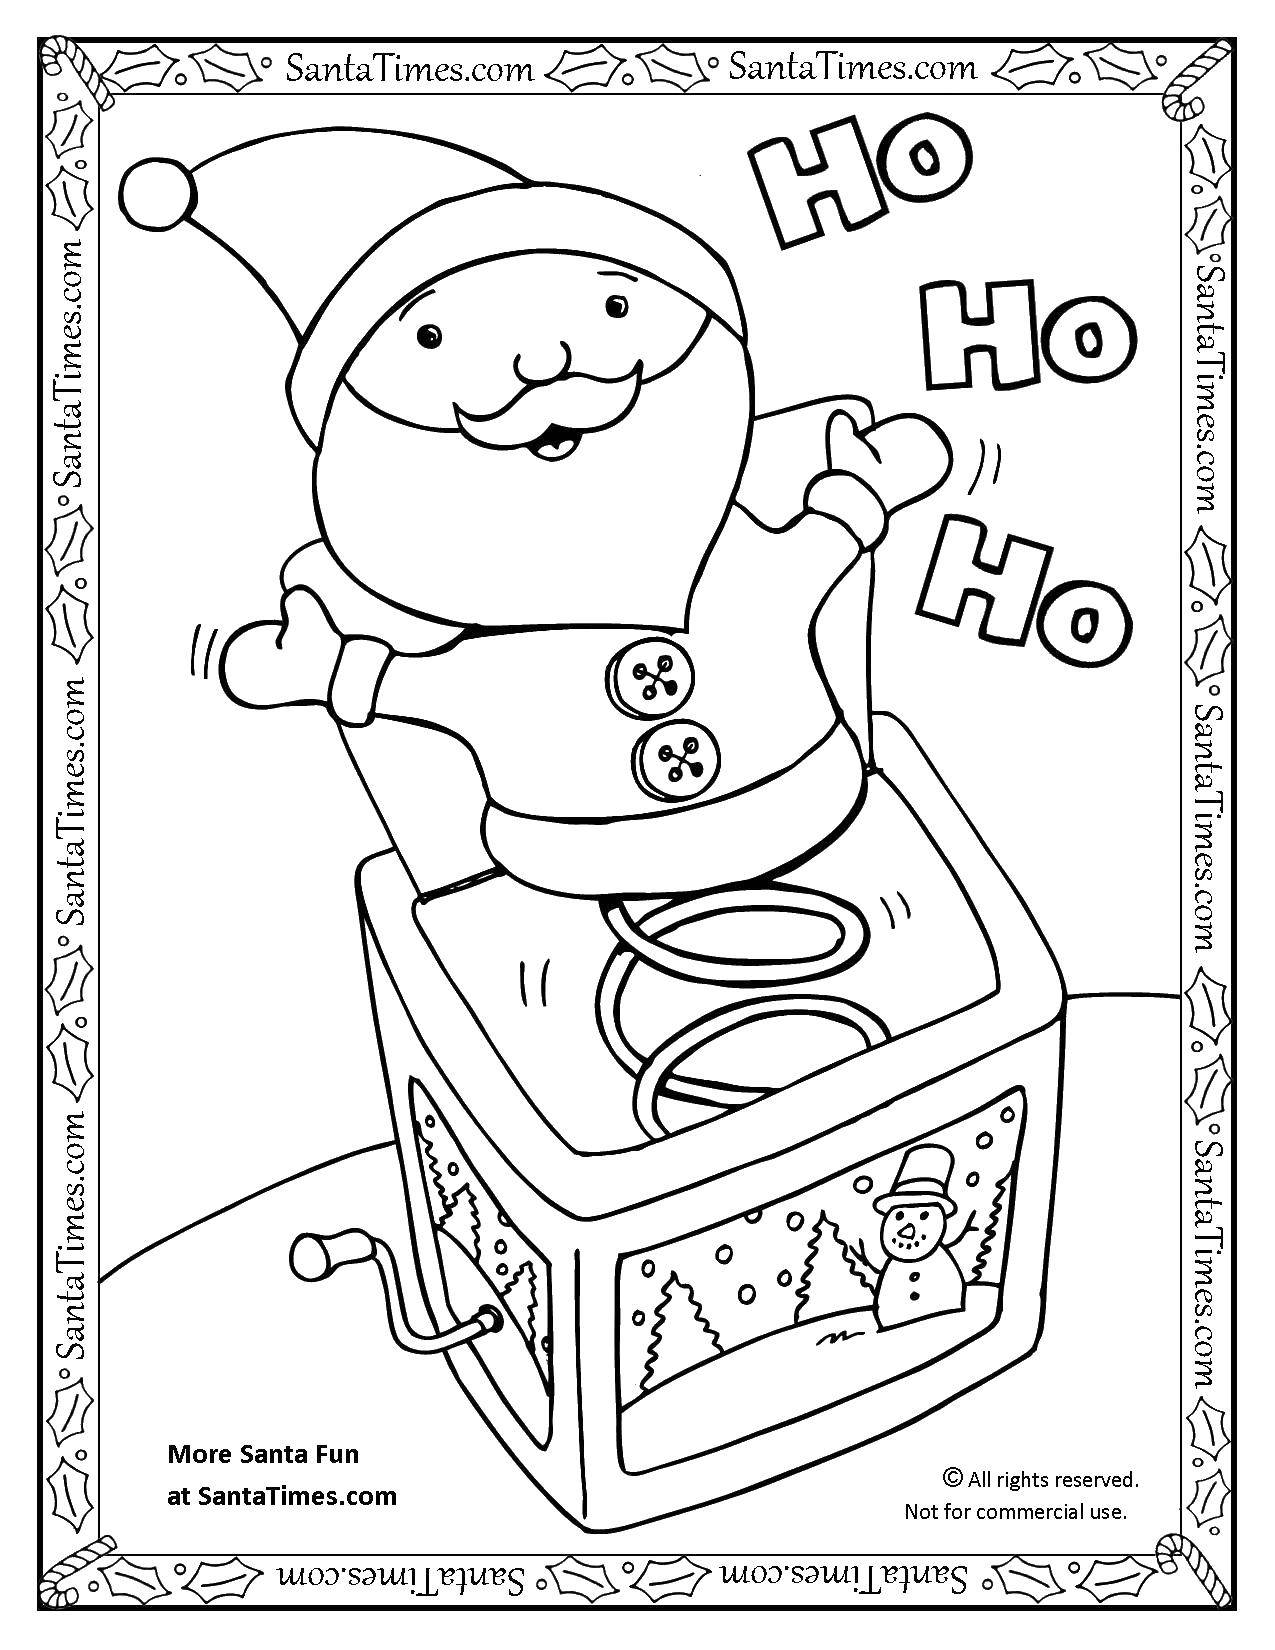 Название: Раскраска Санта в коробке. Категория: игрушки. Теги: коробка, санта.